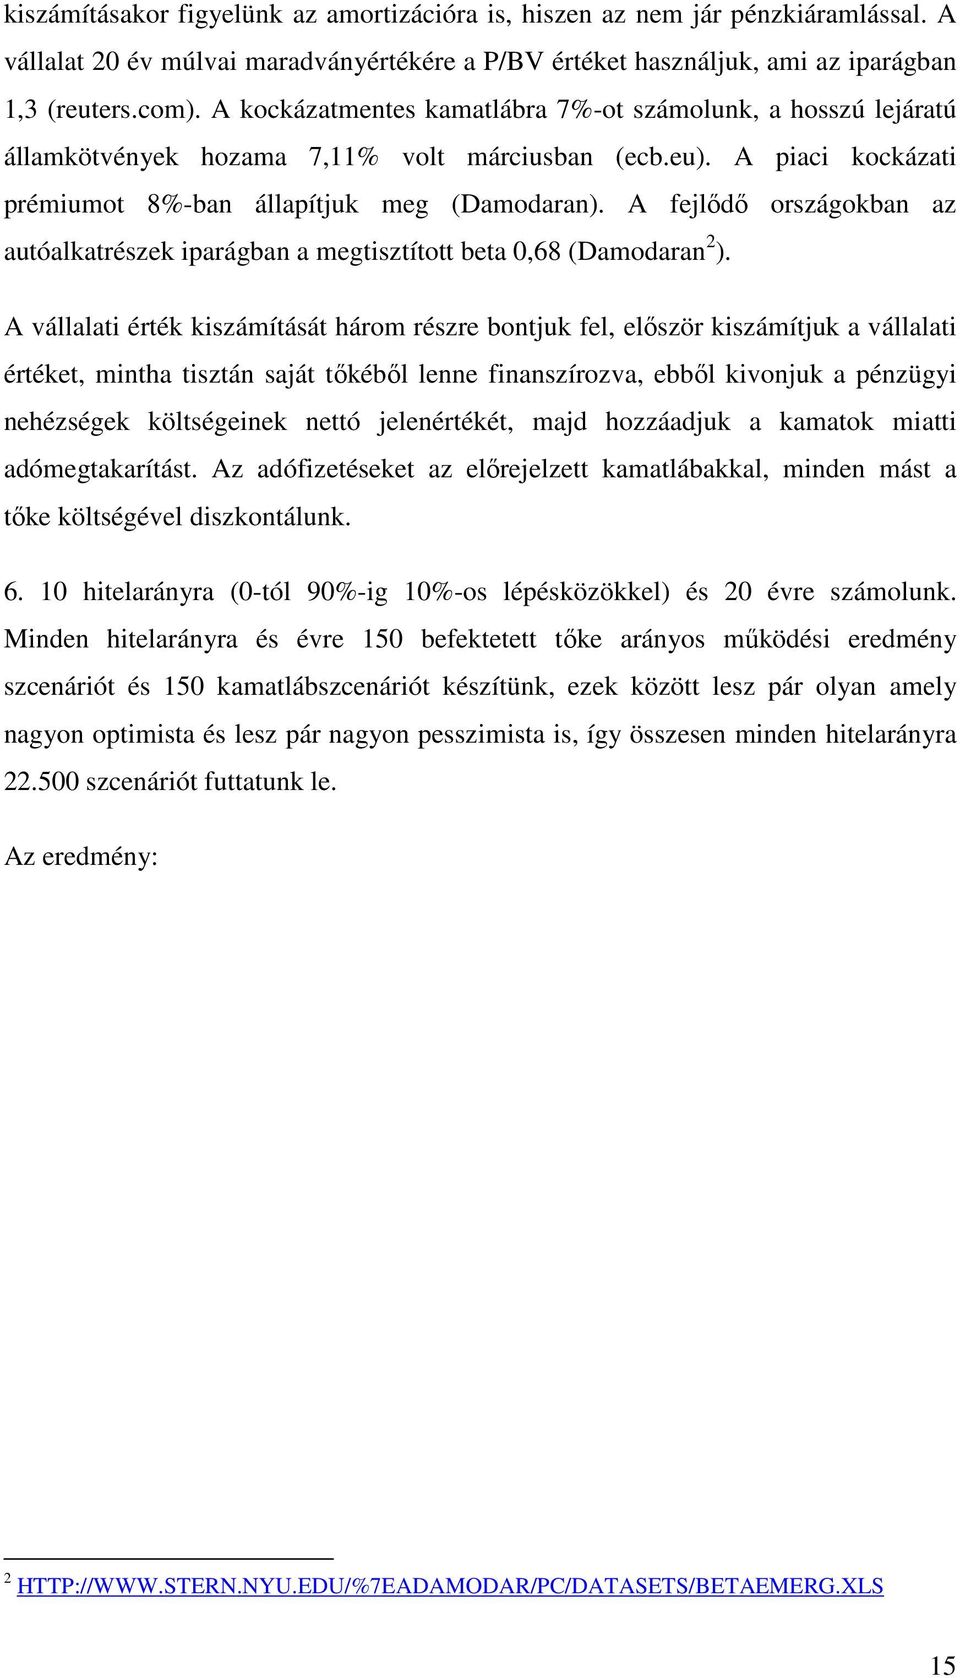 A fejlıdı országokban az auóalkarészek iparágban a megiszío bea 0,68 (Damodaran 2 ).